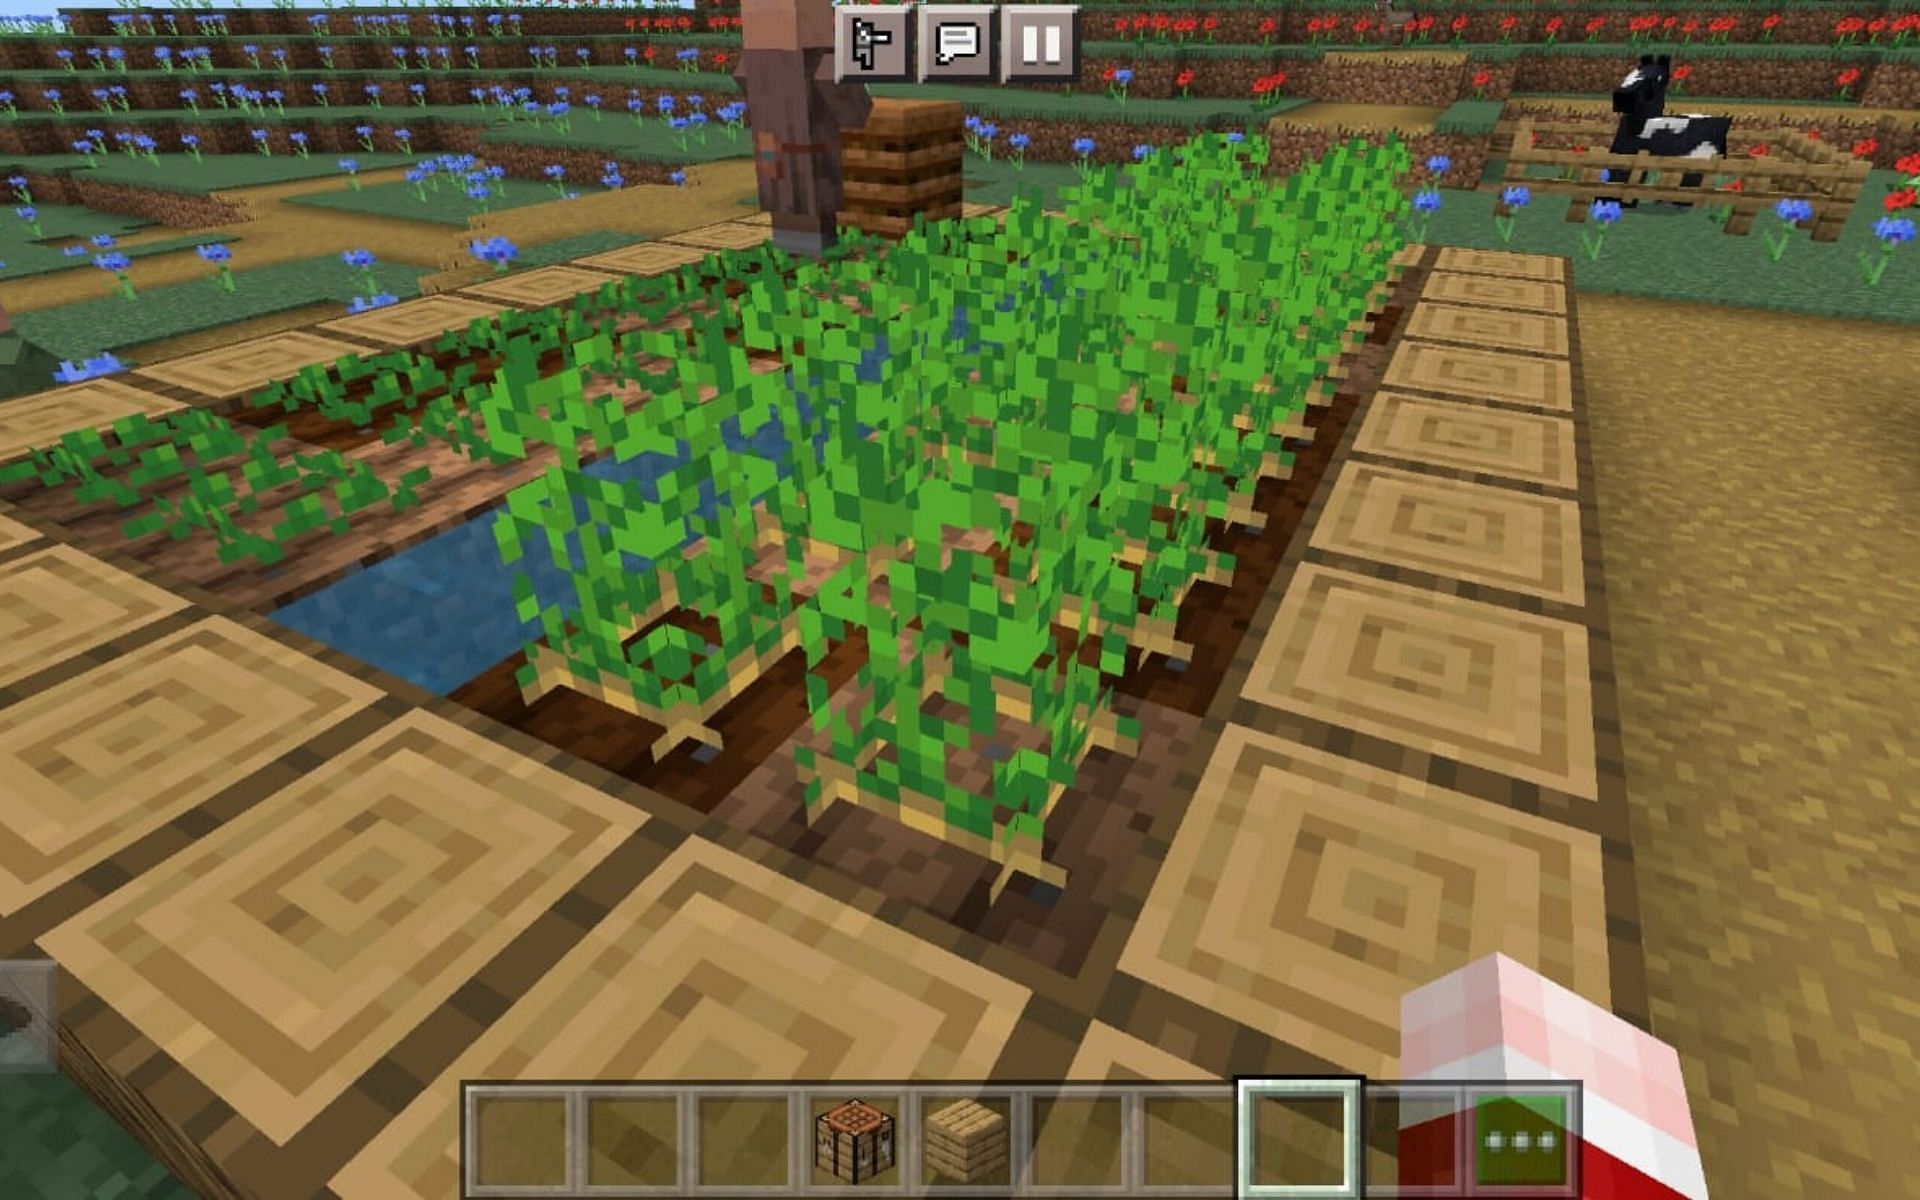 A potato farm in a village (Image via Minecraft)